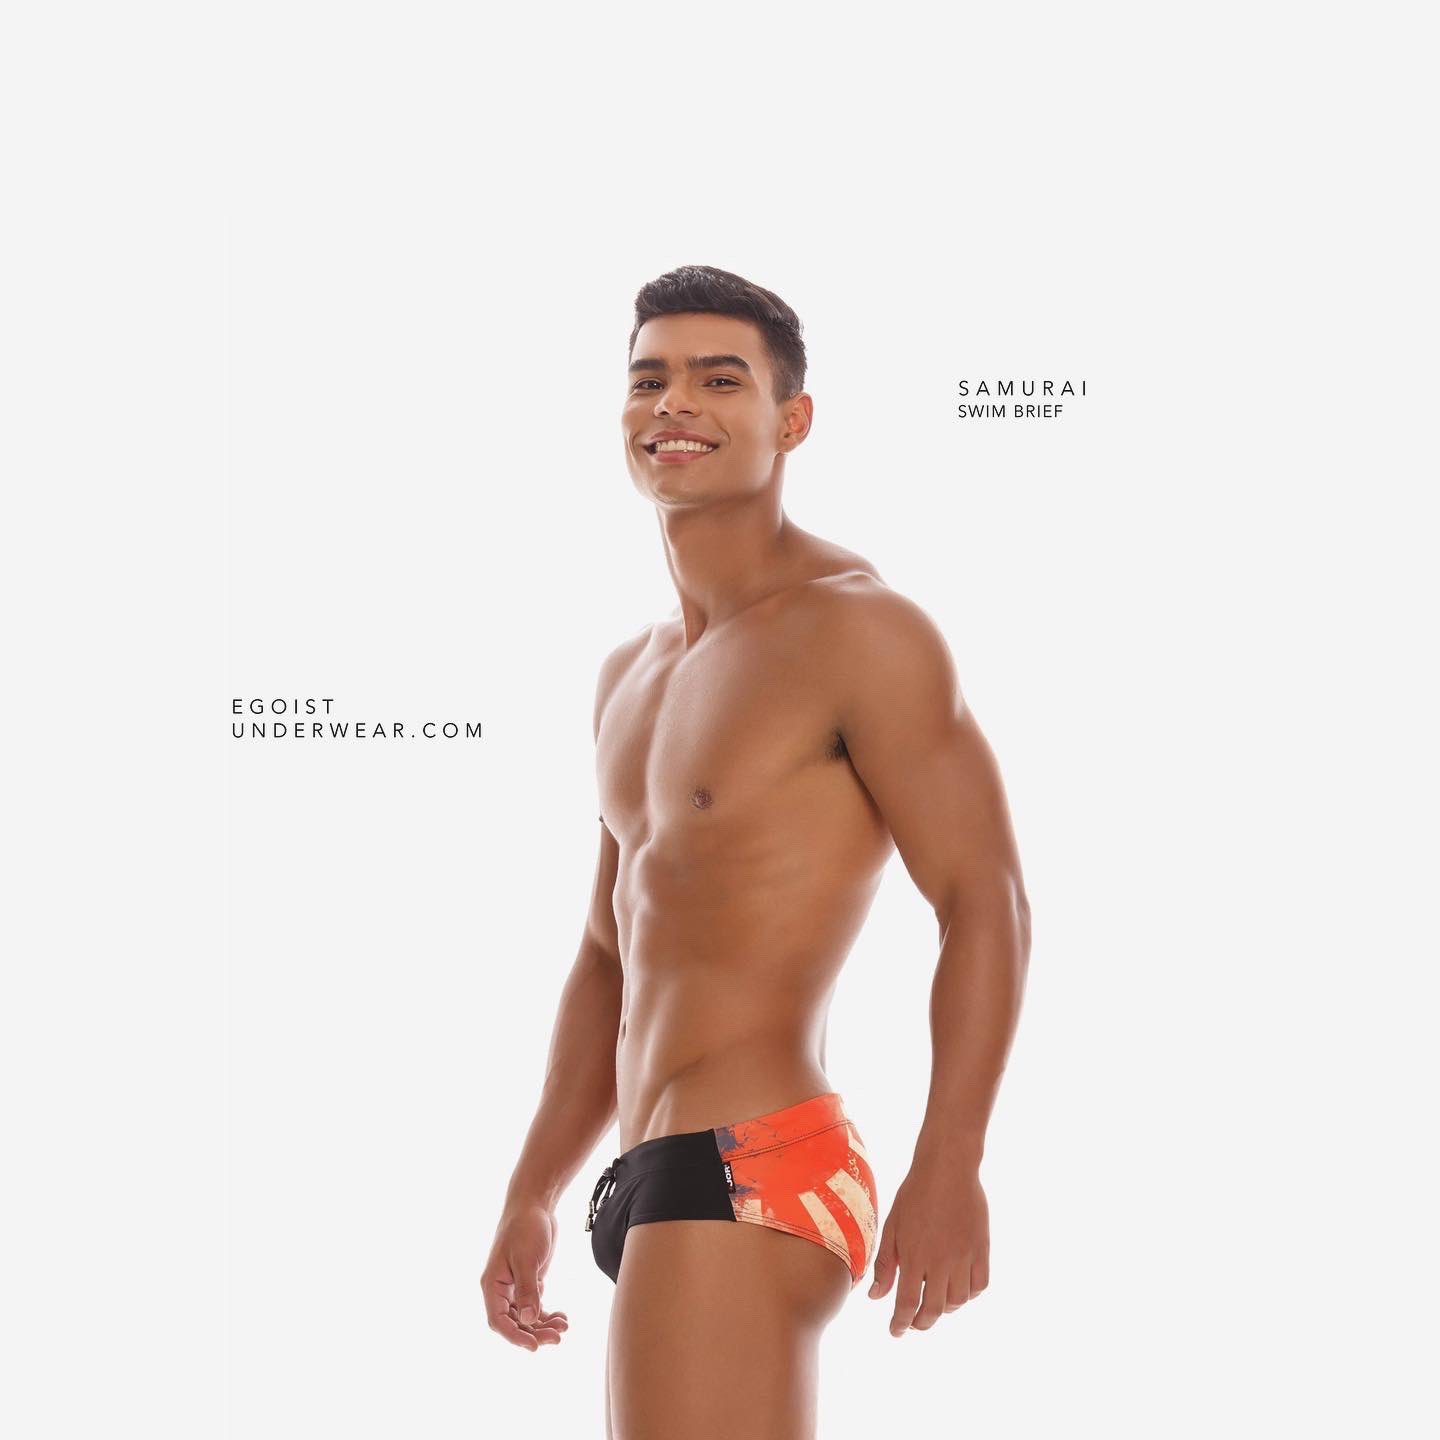 Egoist Underwear on X:  Samurai swim brief